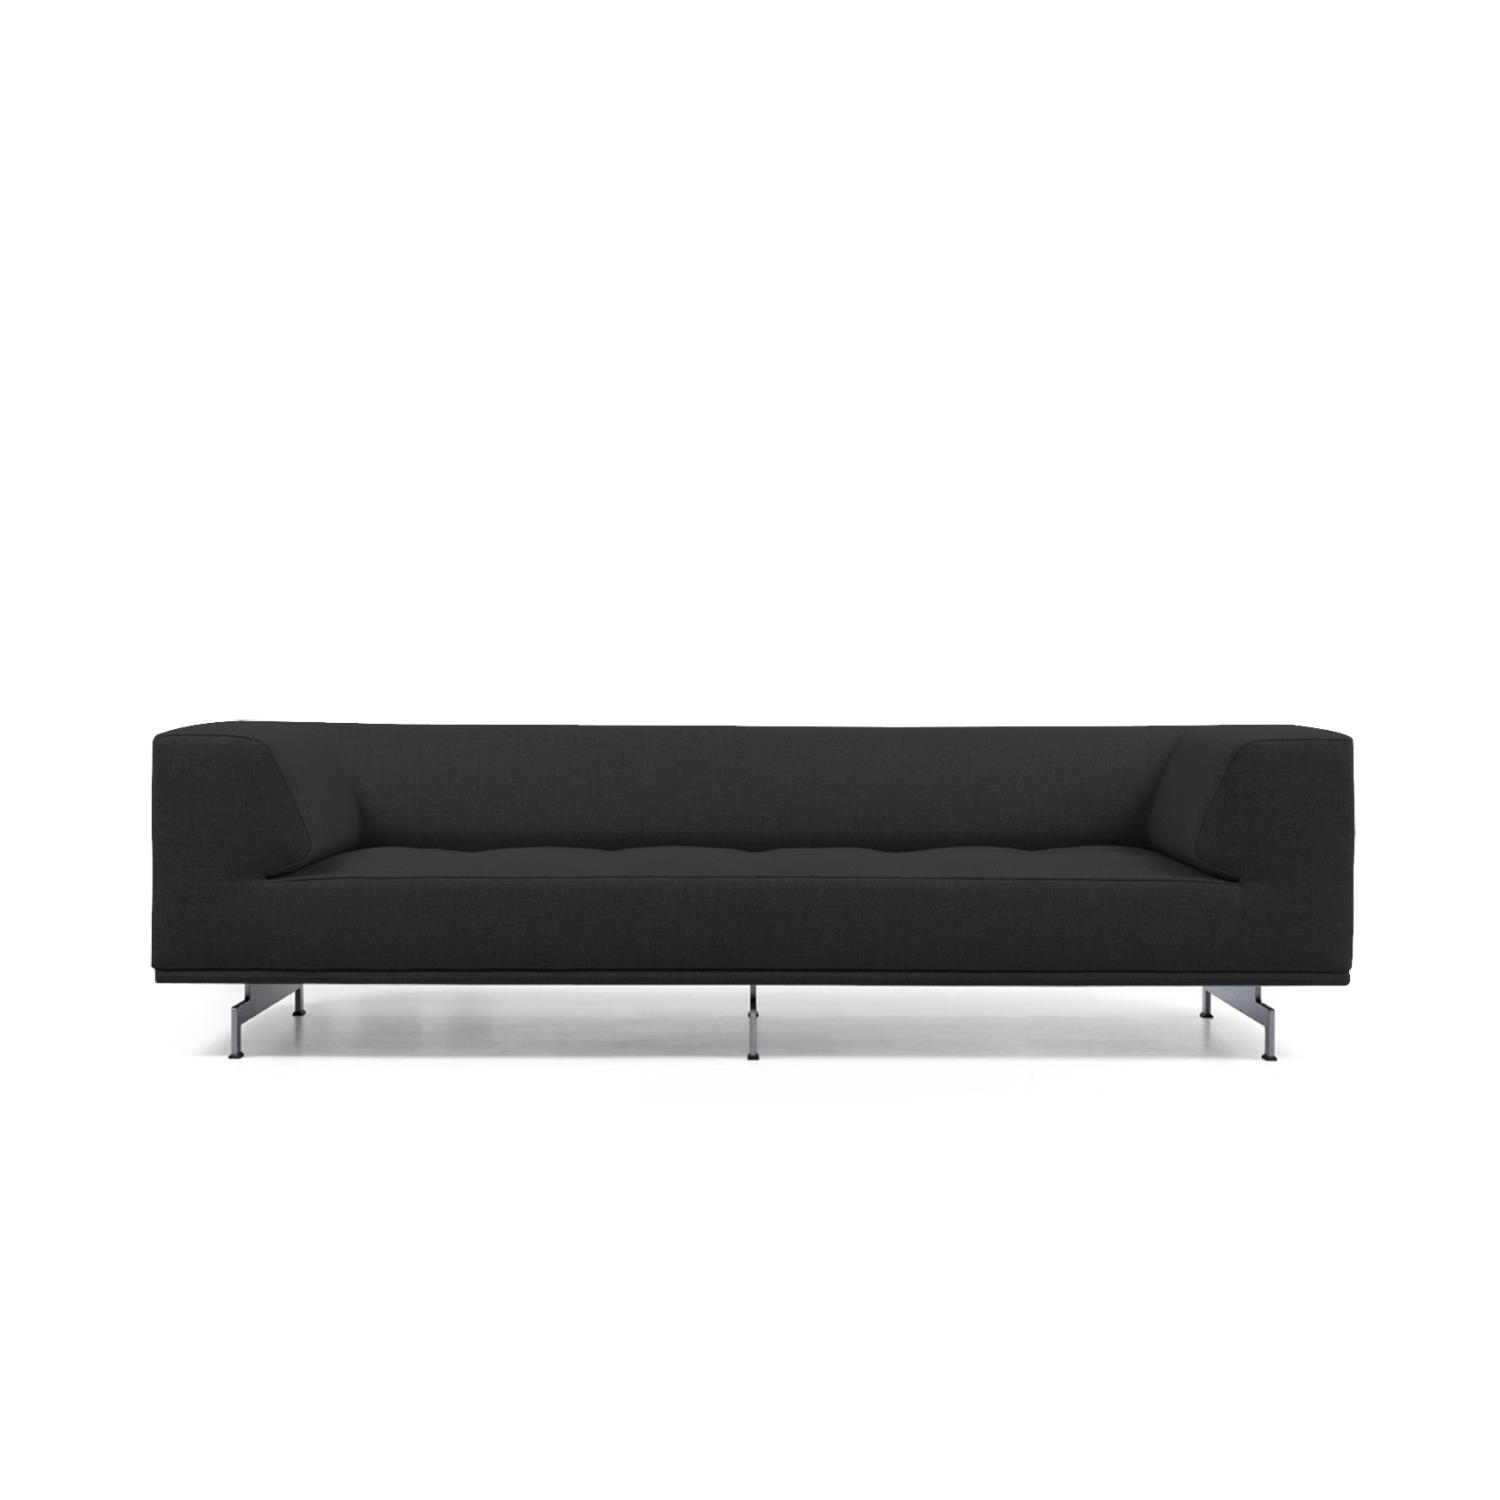 EJ 450 Delphi | 3-seter Sofa